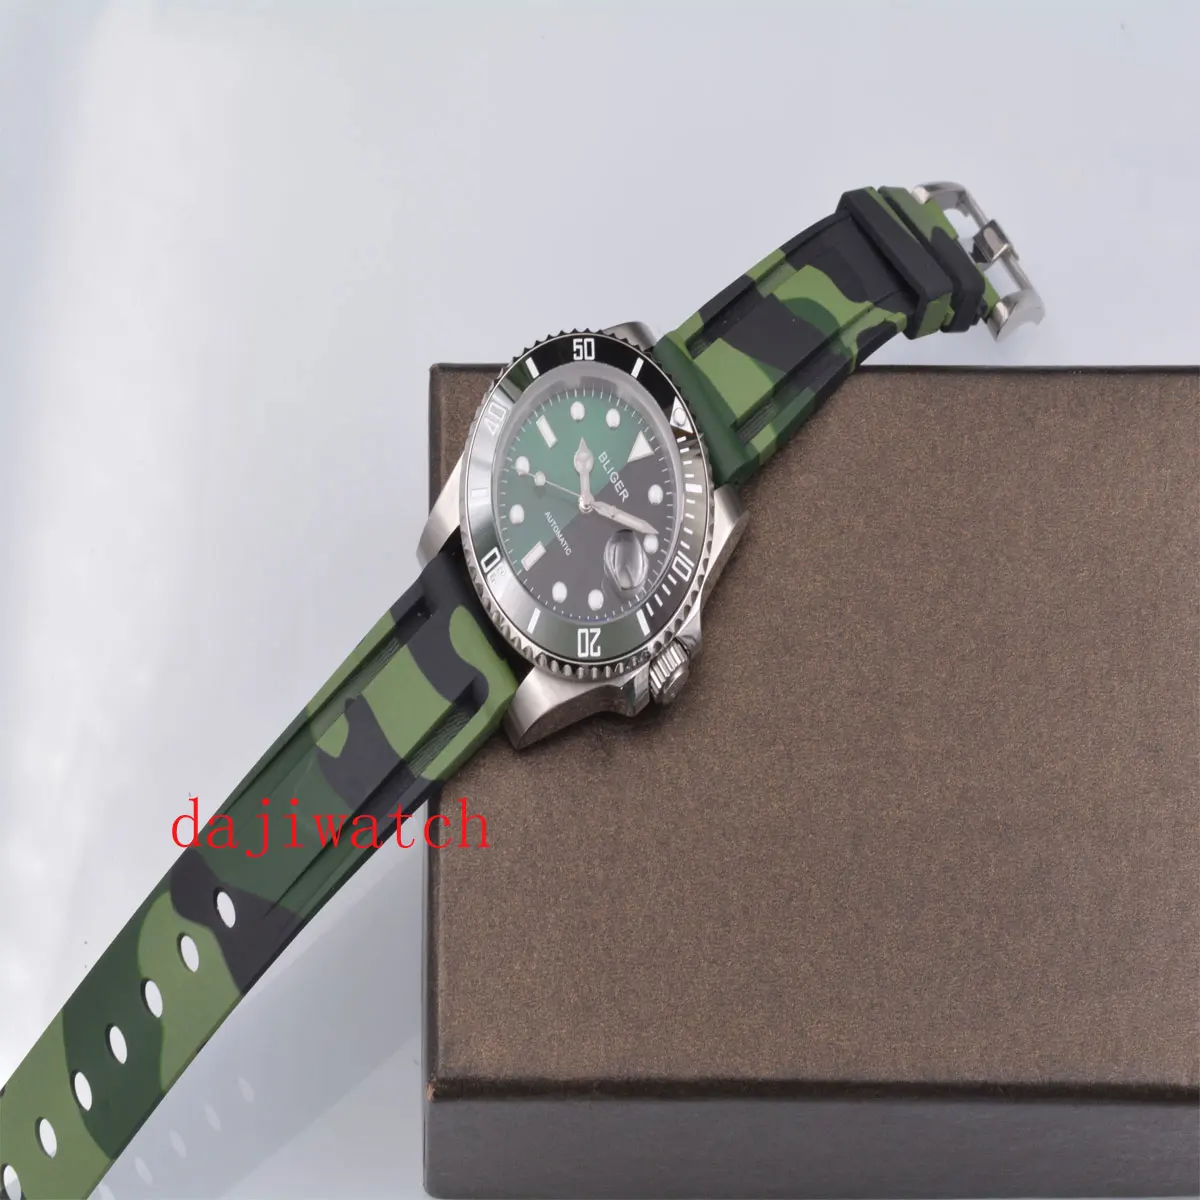 Новинка 2019Corgeut 40 мм Bliger Резиновая Полоса Черный Зеленый циферблат сапфировое стекло Дата ободок керамические автоматические мужские часы